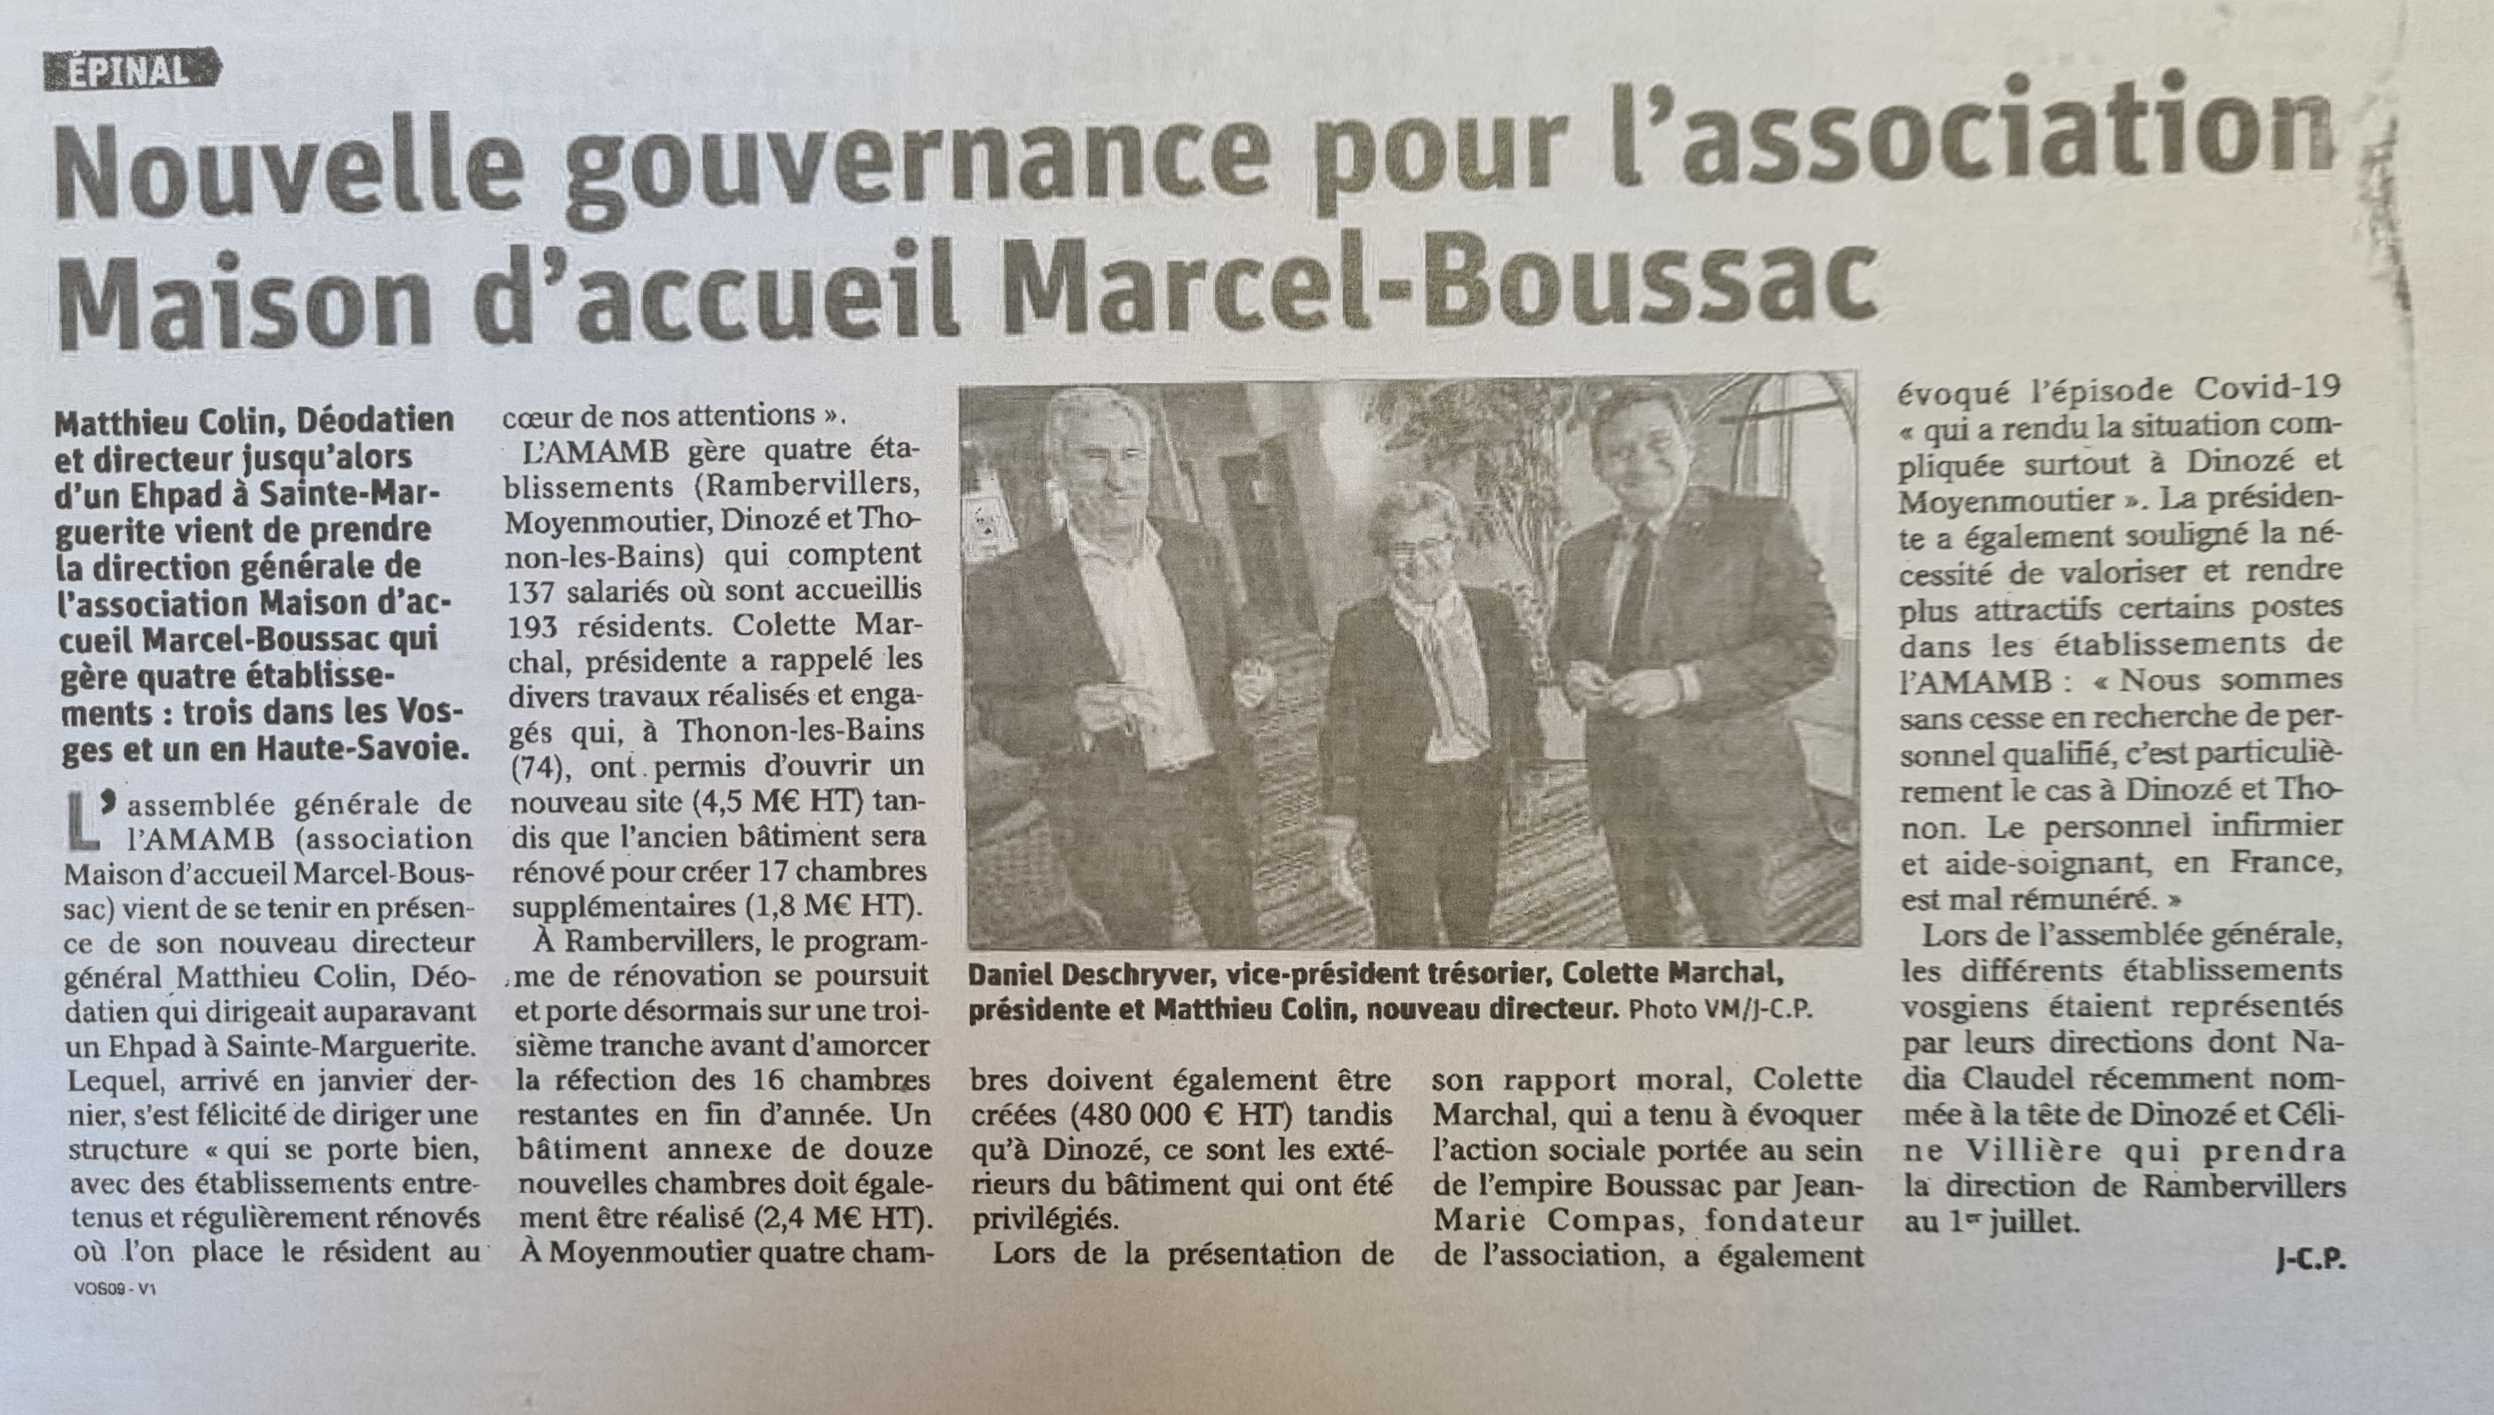 Changement de Direction générale au sein des Maisons Marcel Boussac